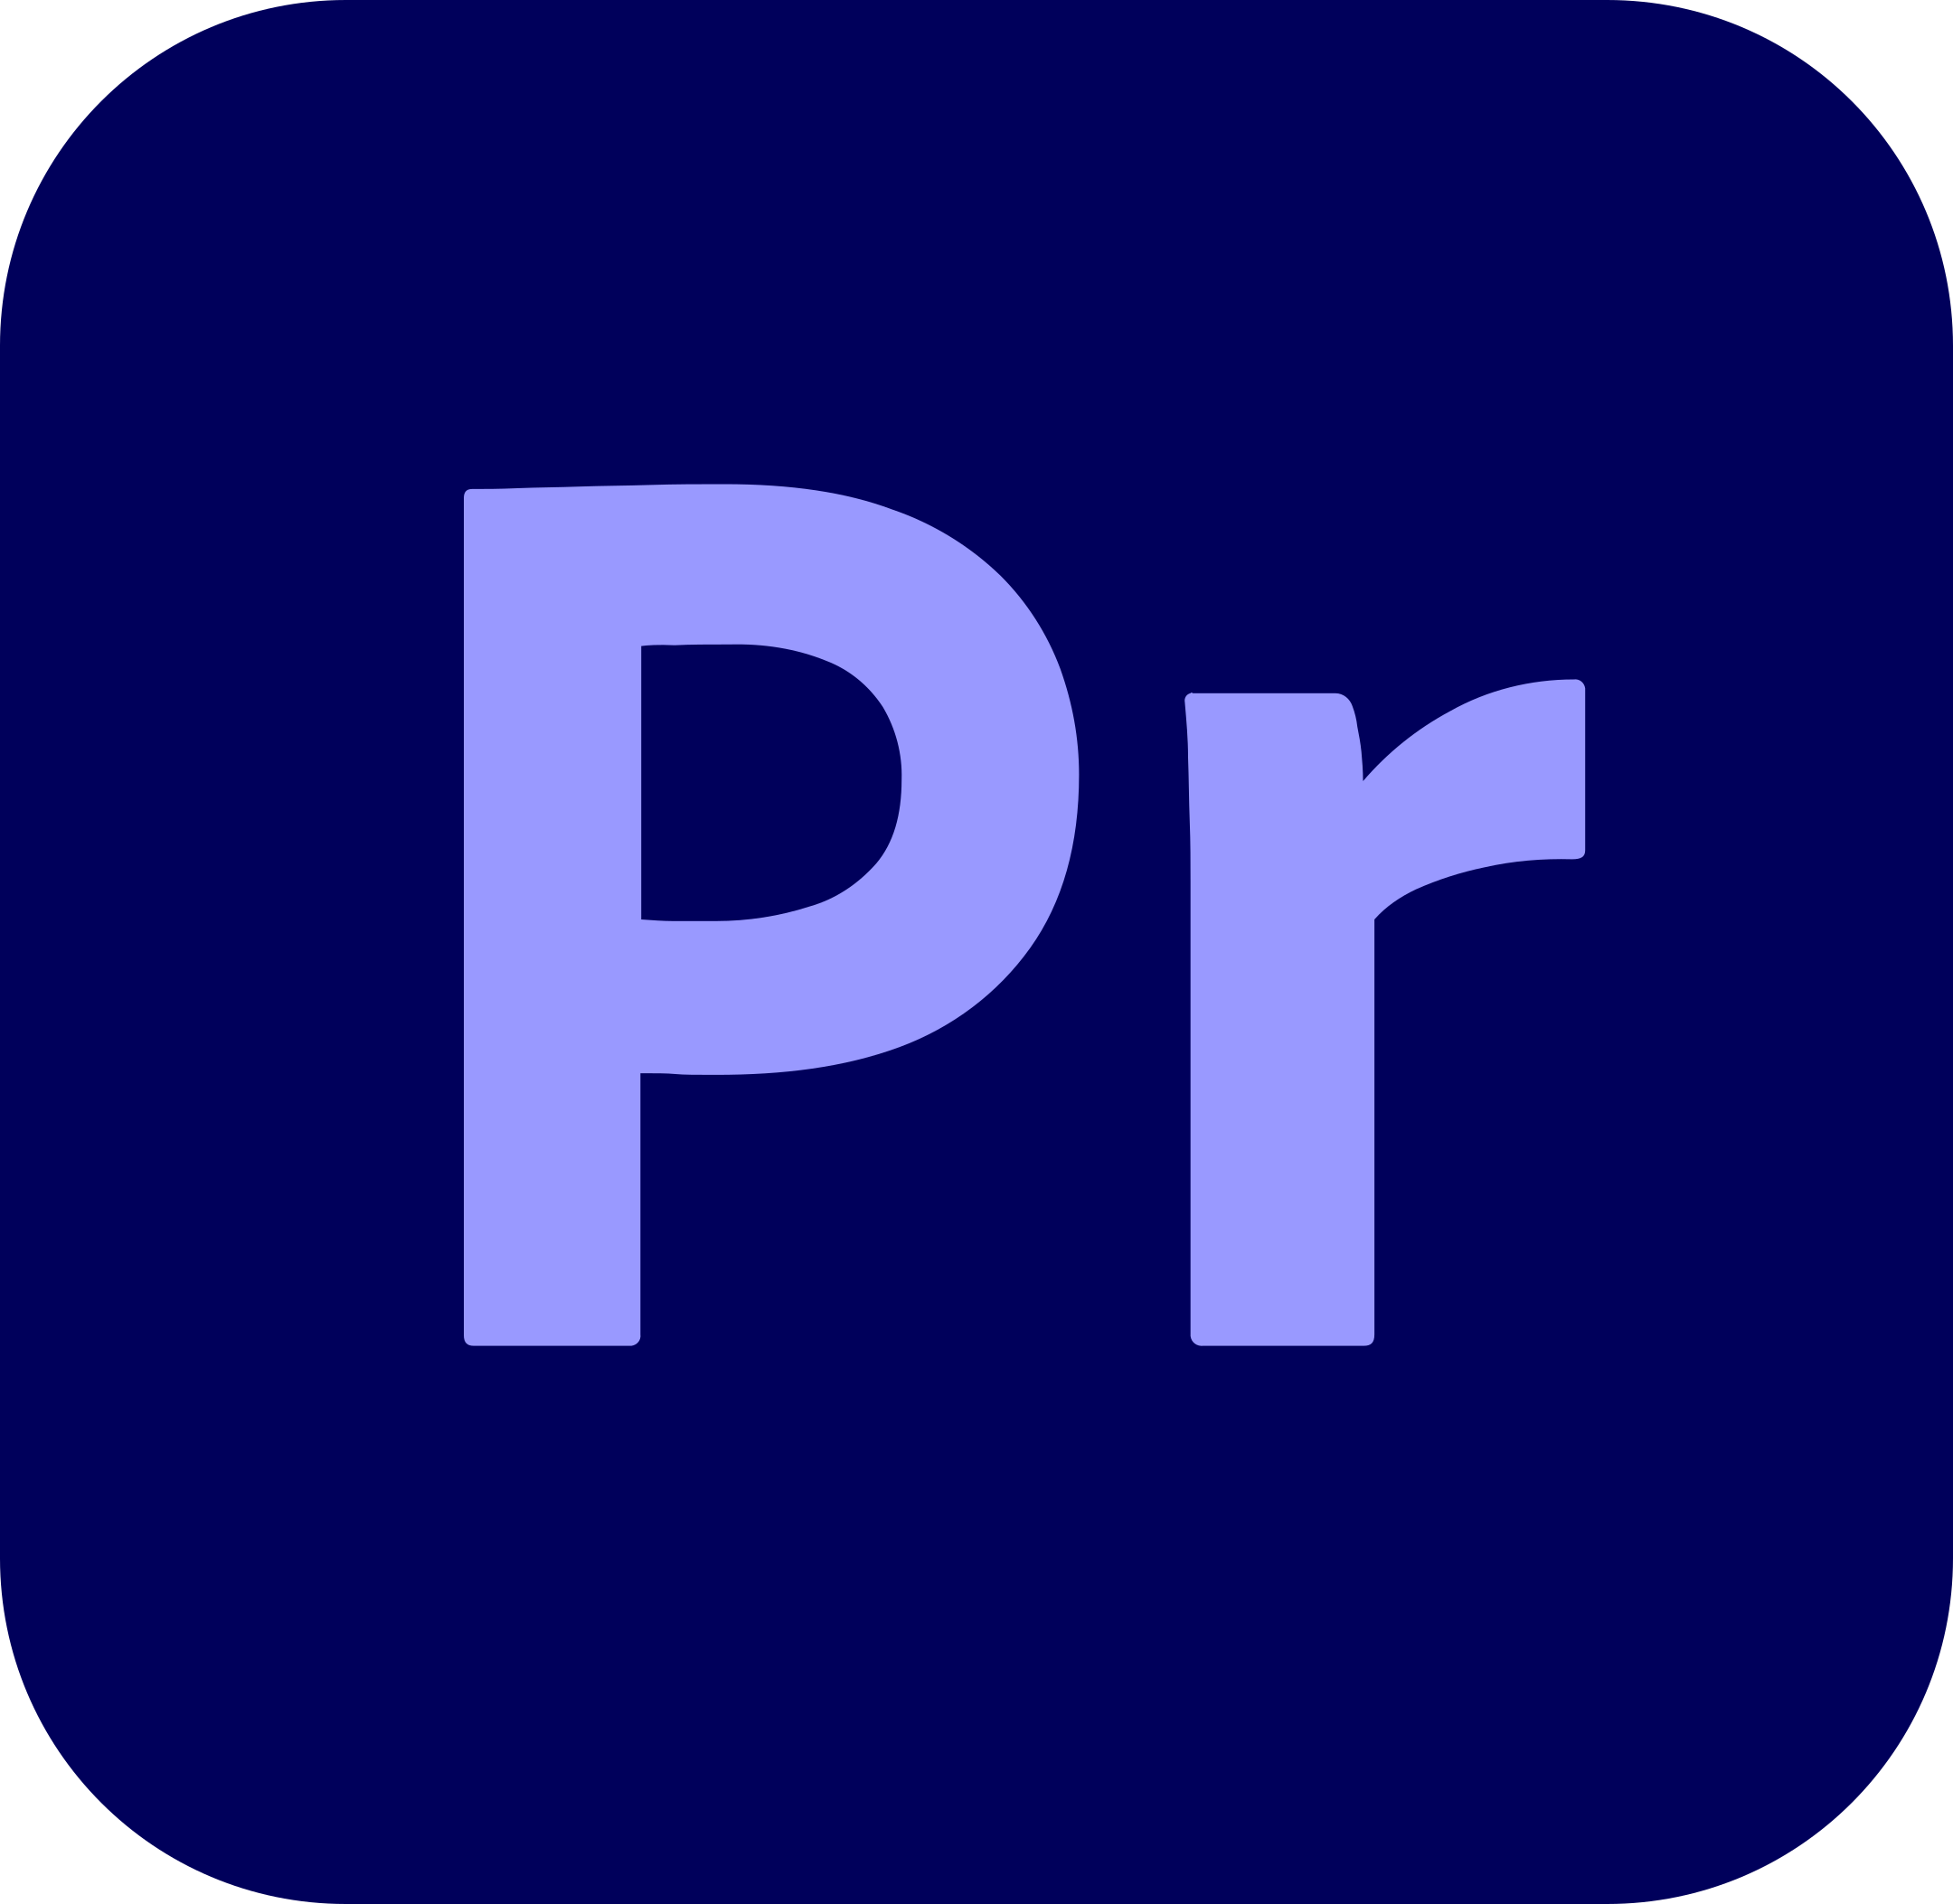 adobe-premiere-pro-logo-1-1.png